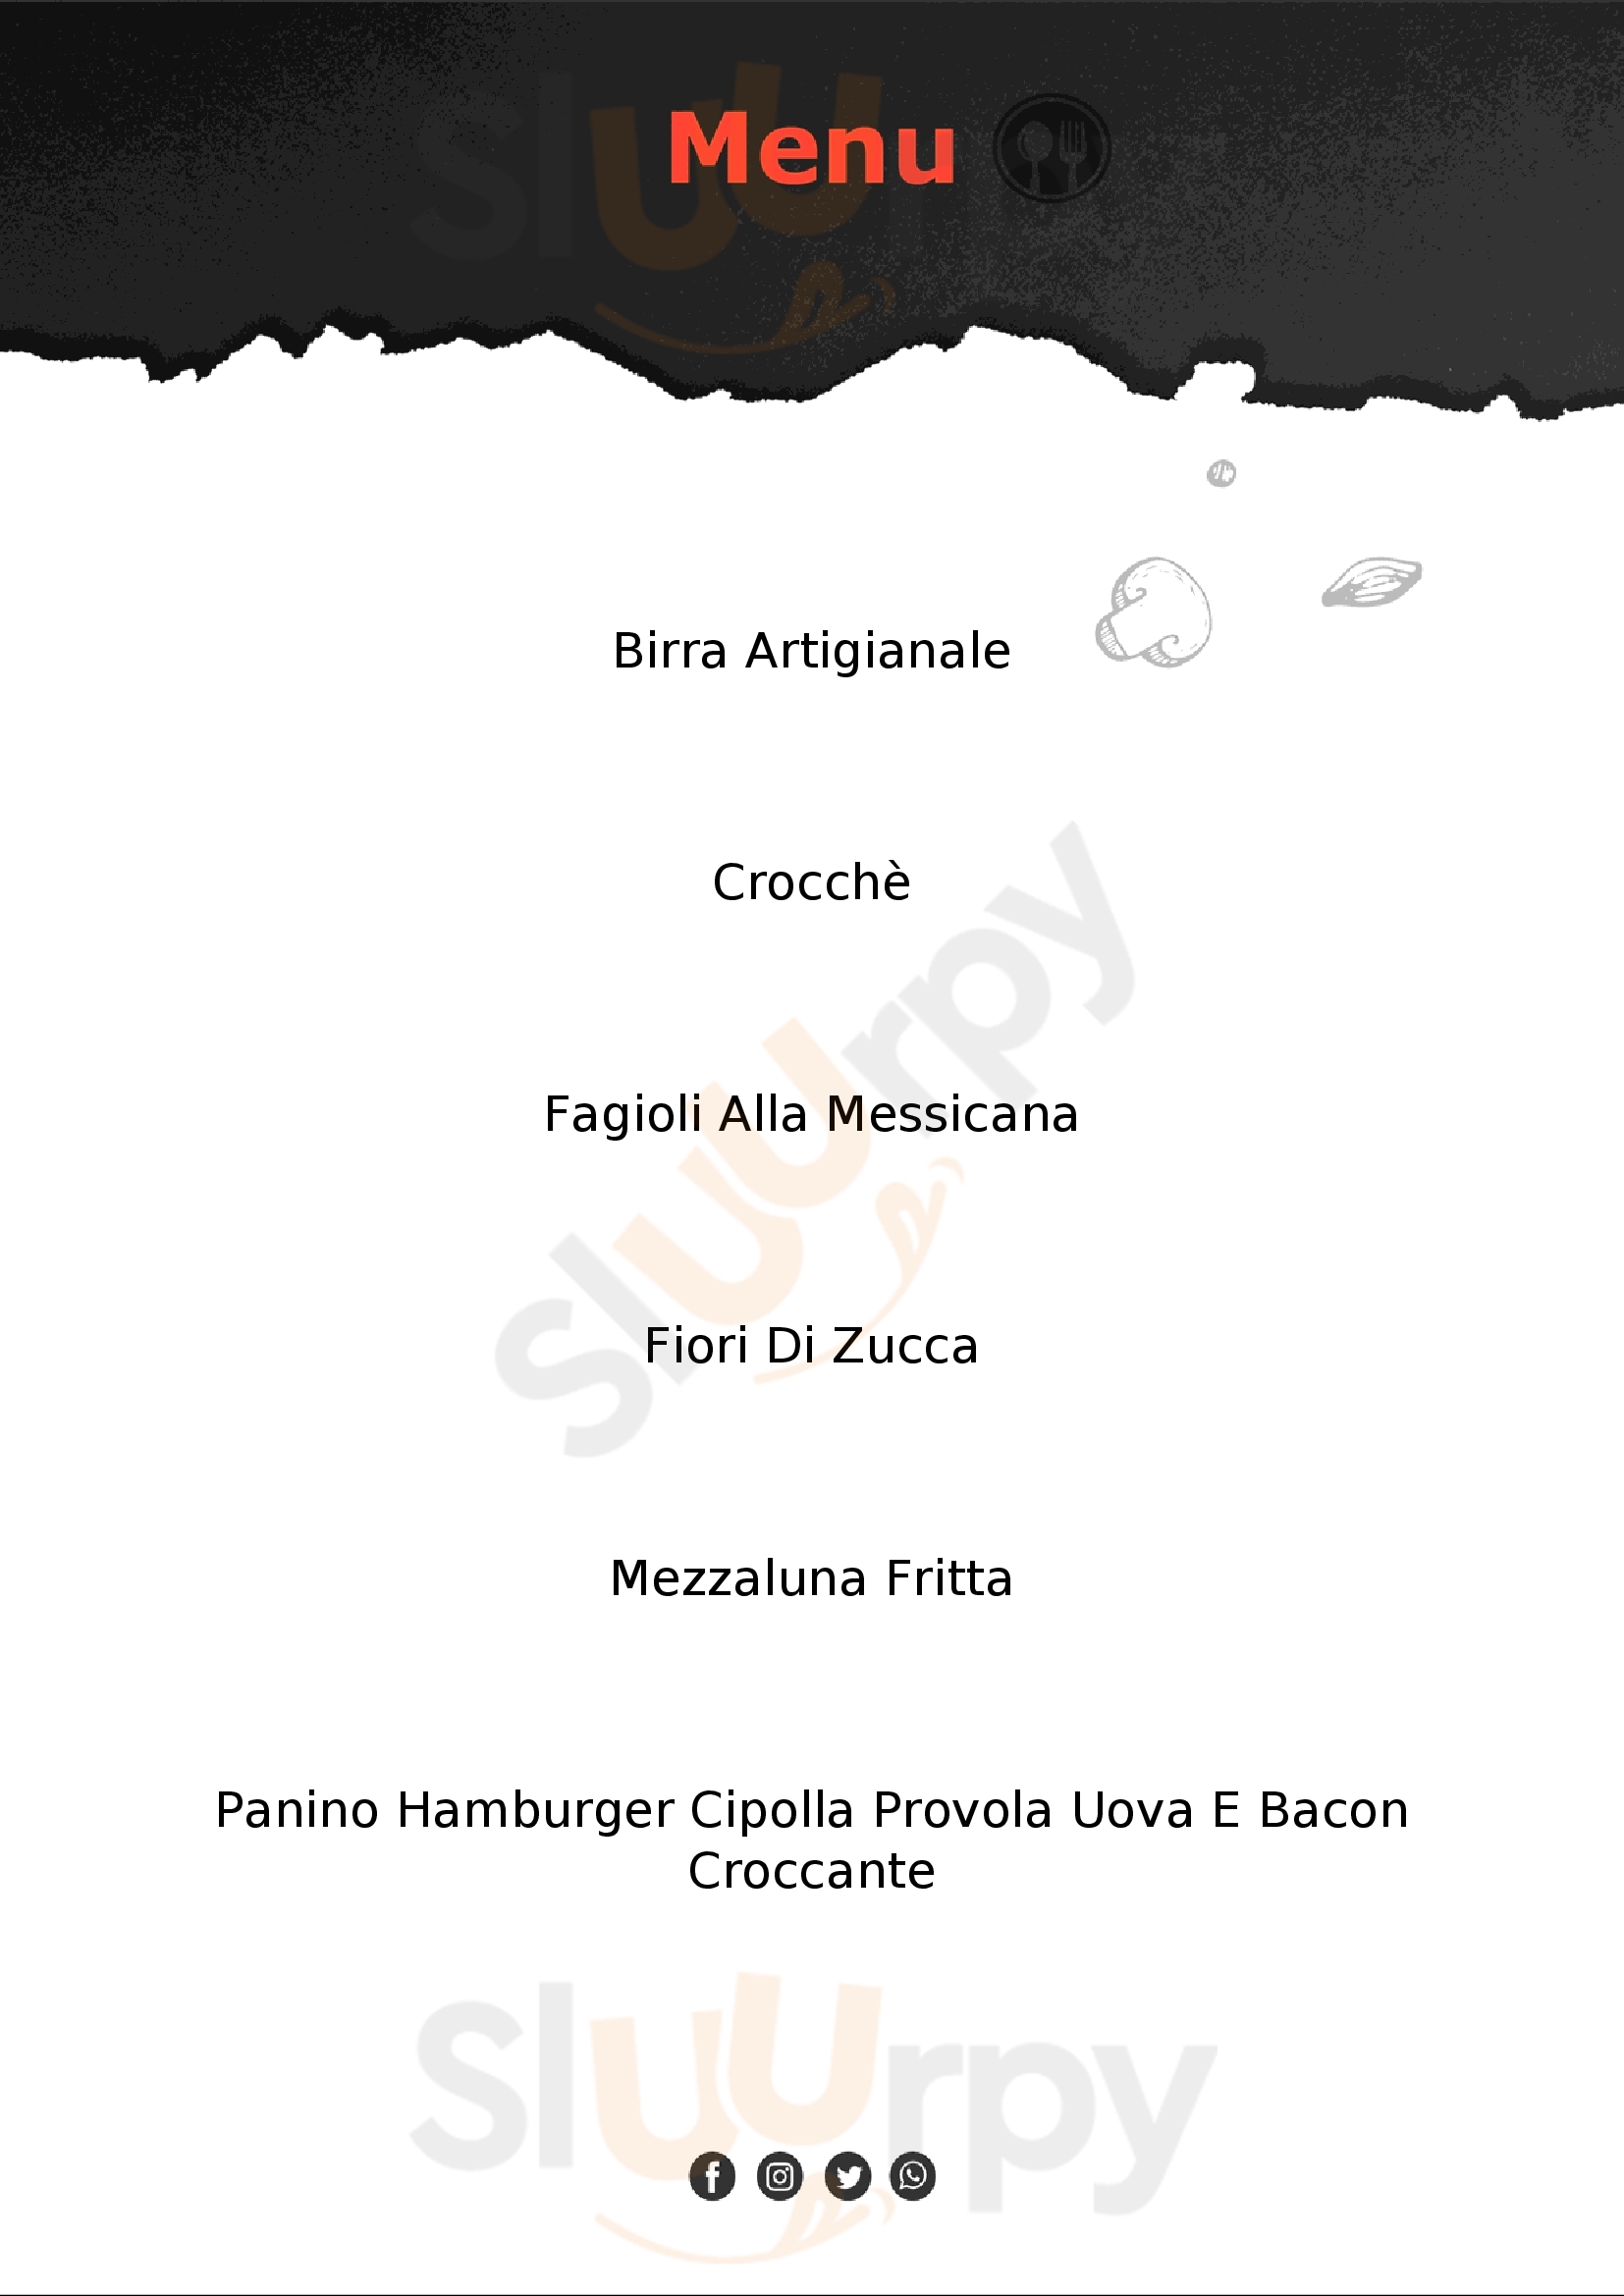 Officina Napoletana Pizzeria Panineria Giugliano in Campania menù 1 pagina